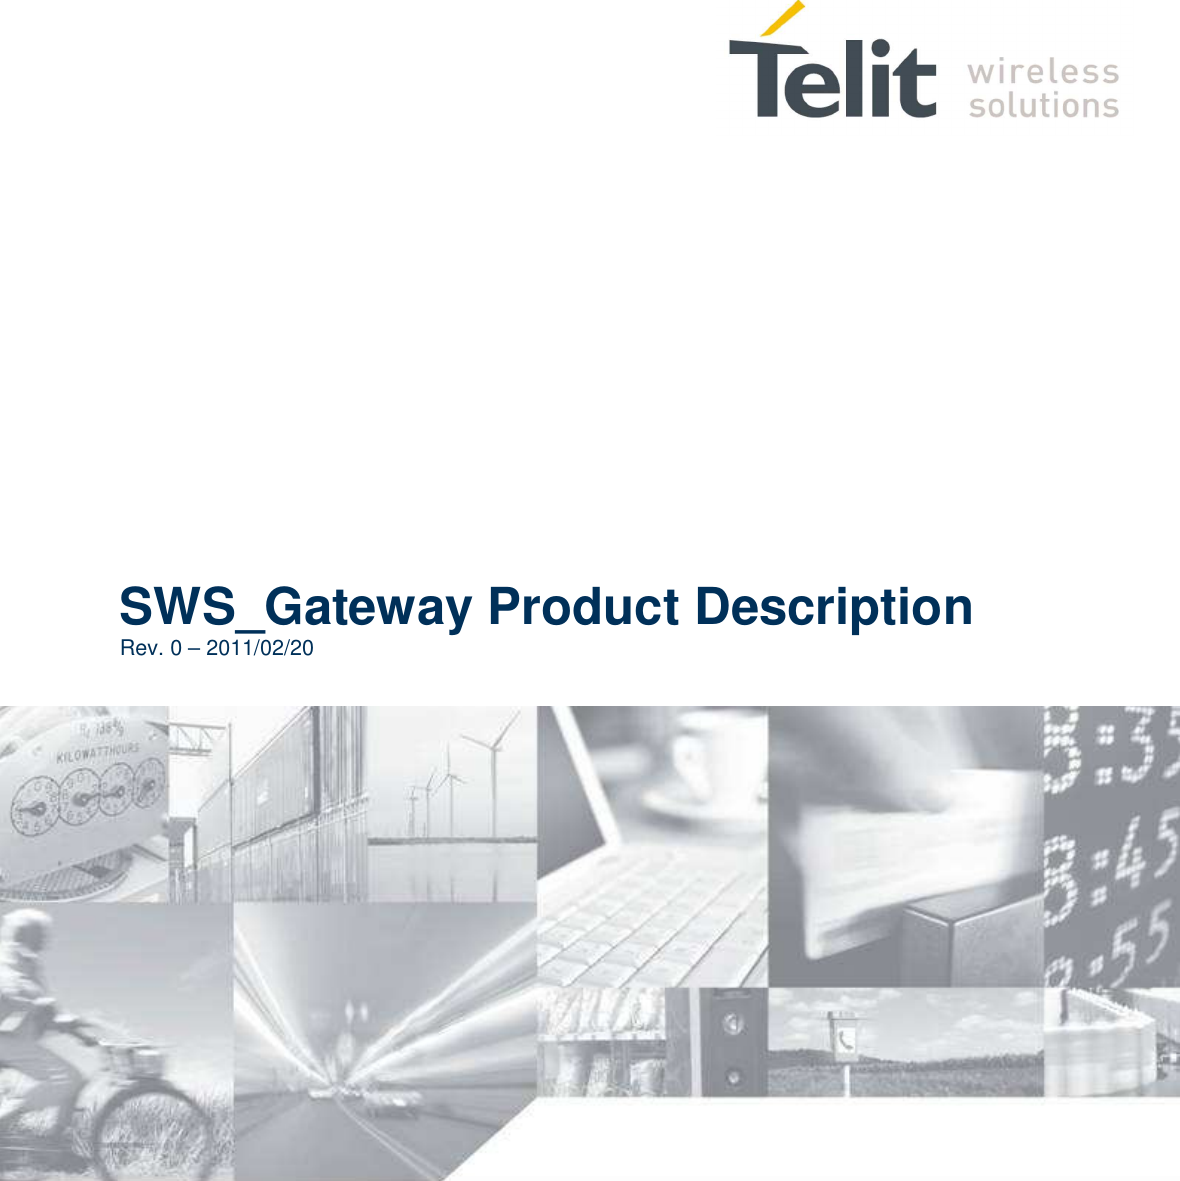                   SWS_Gateway Product Description Rev. 0 – 2011/02/20        